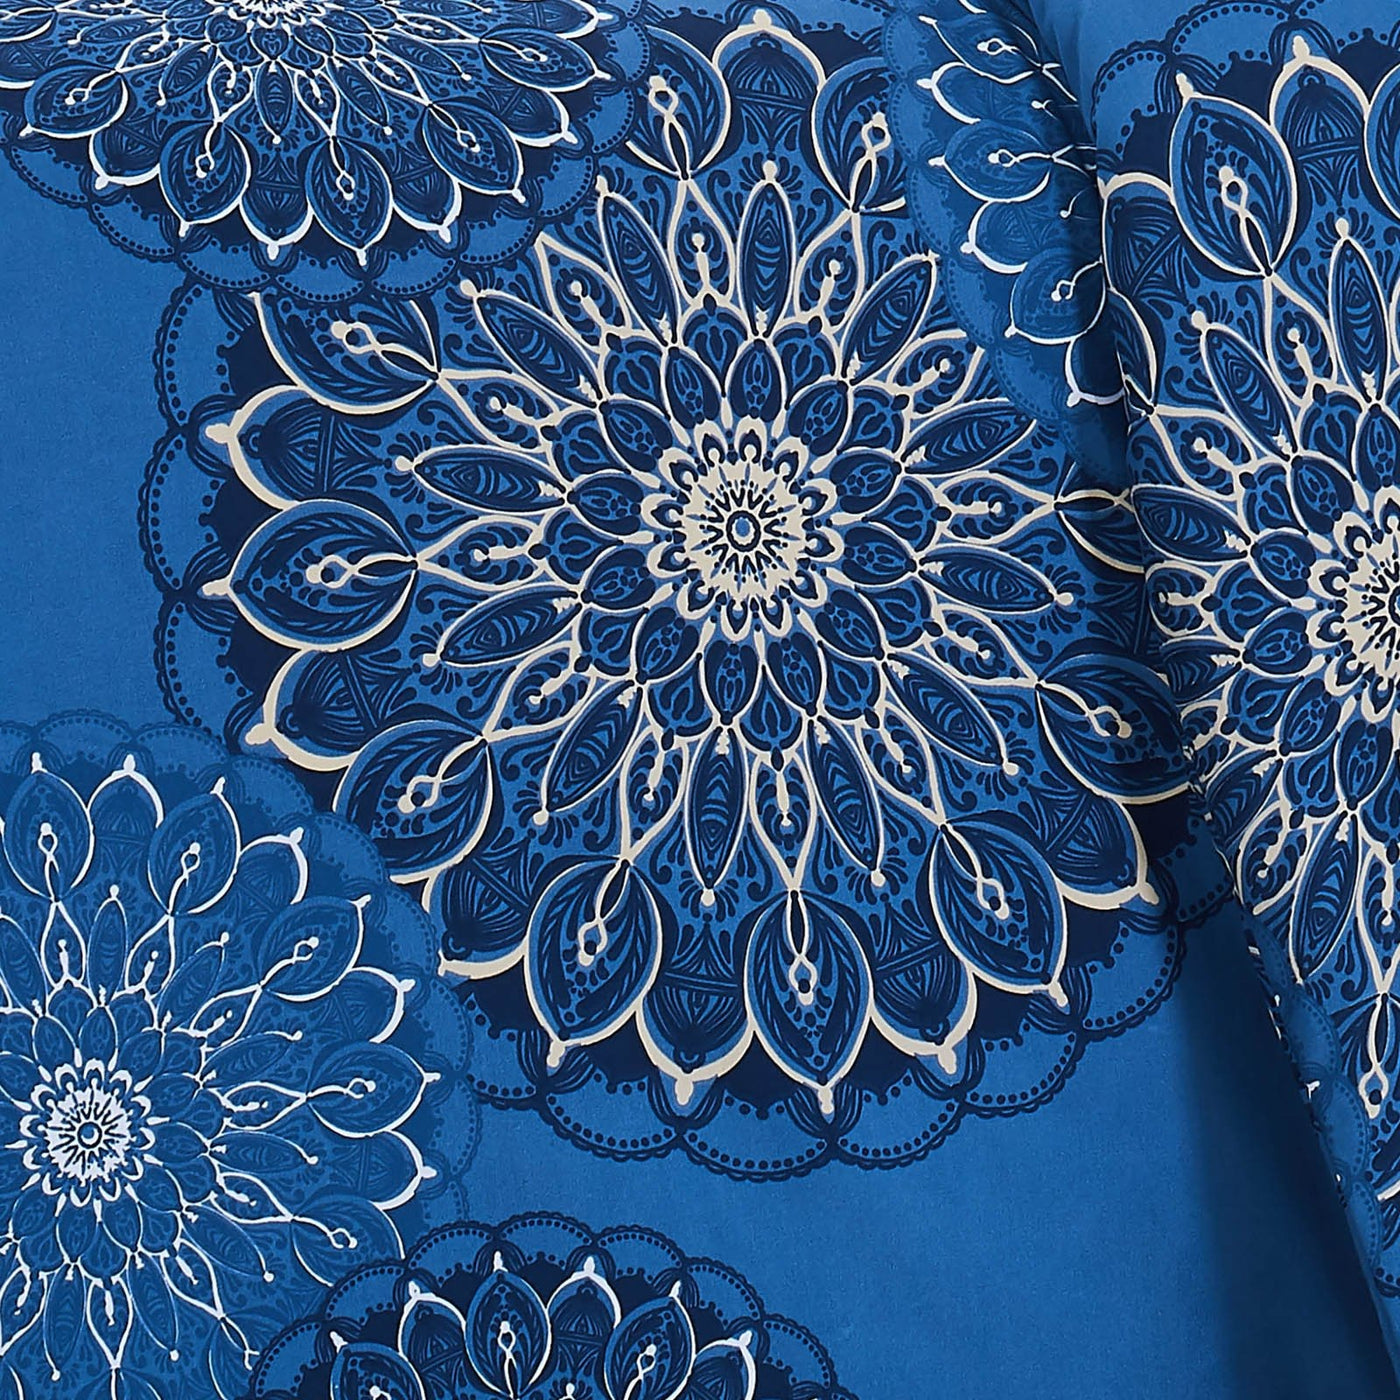 Dahlia Duvet Cover in Blue